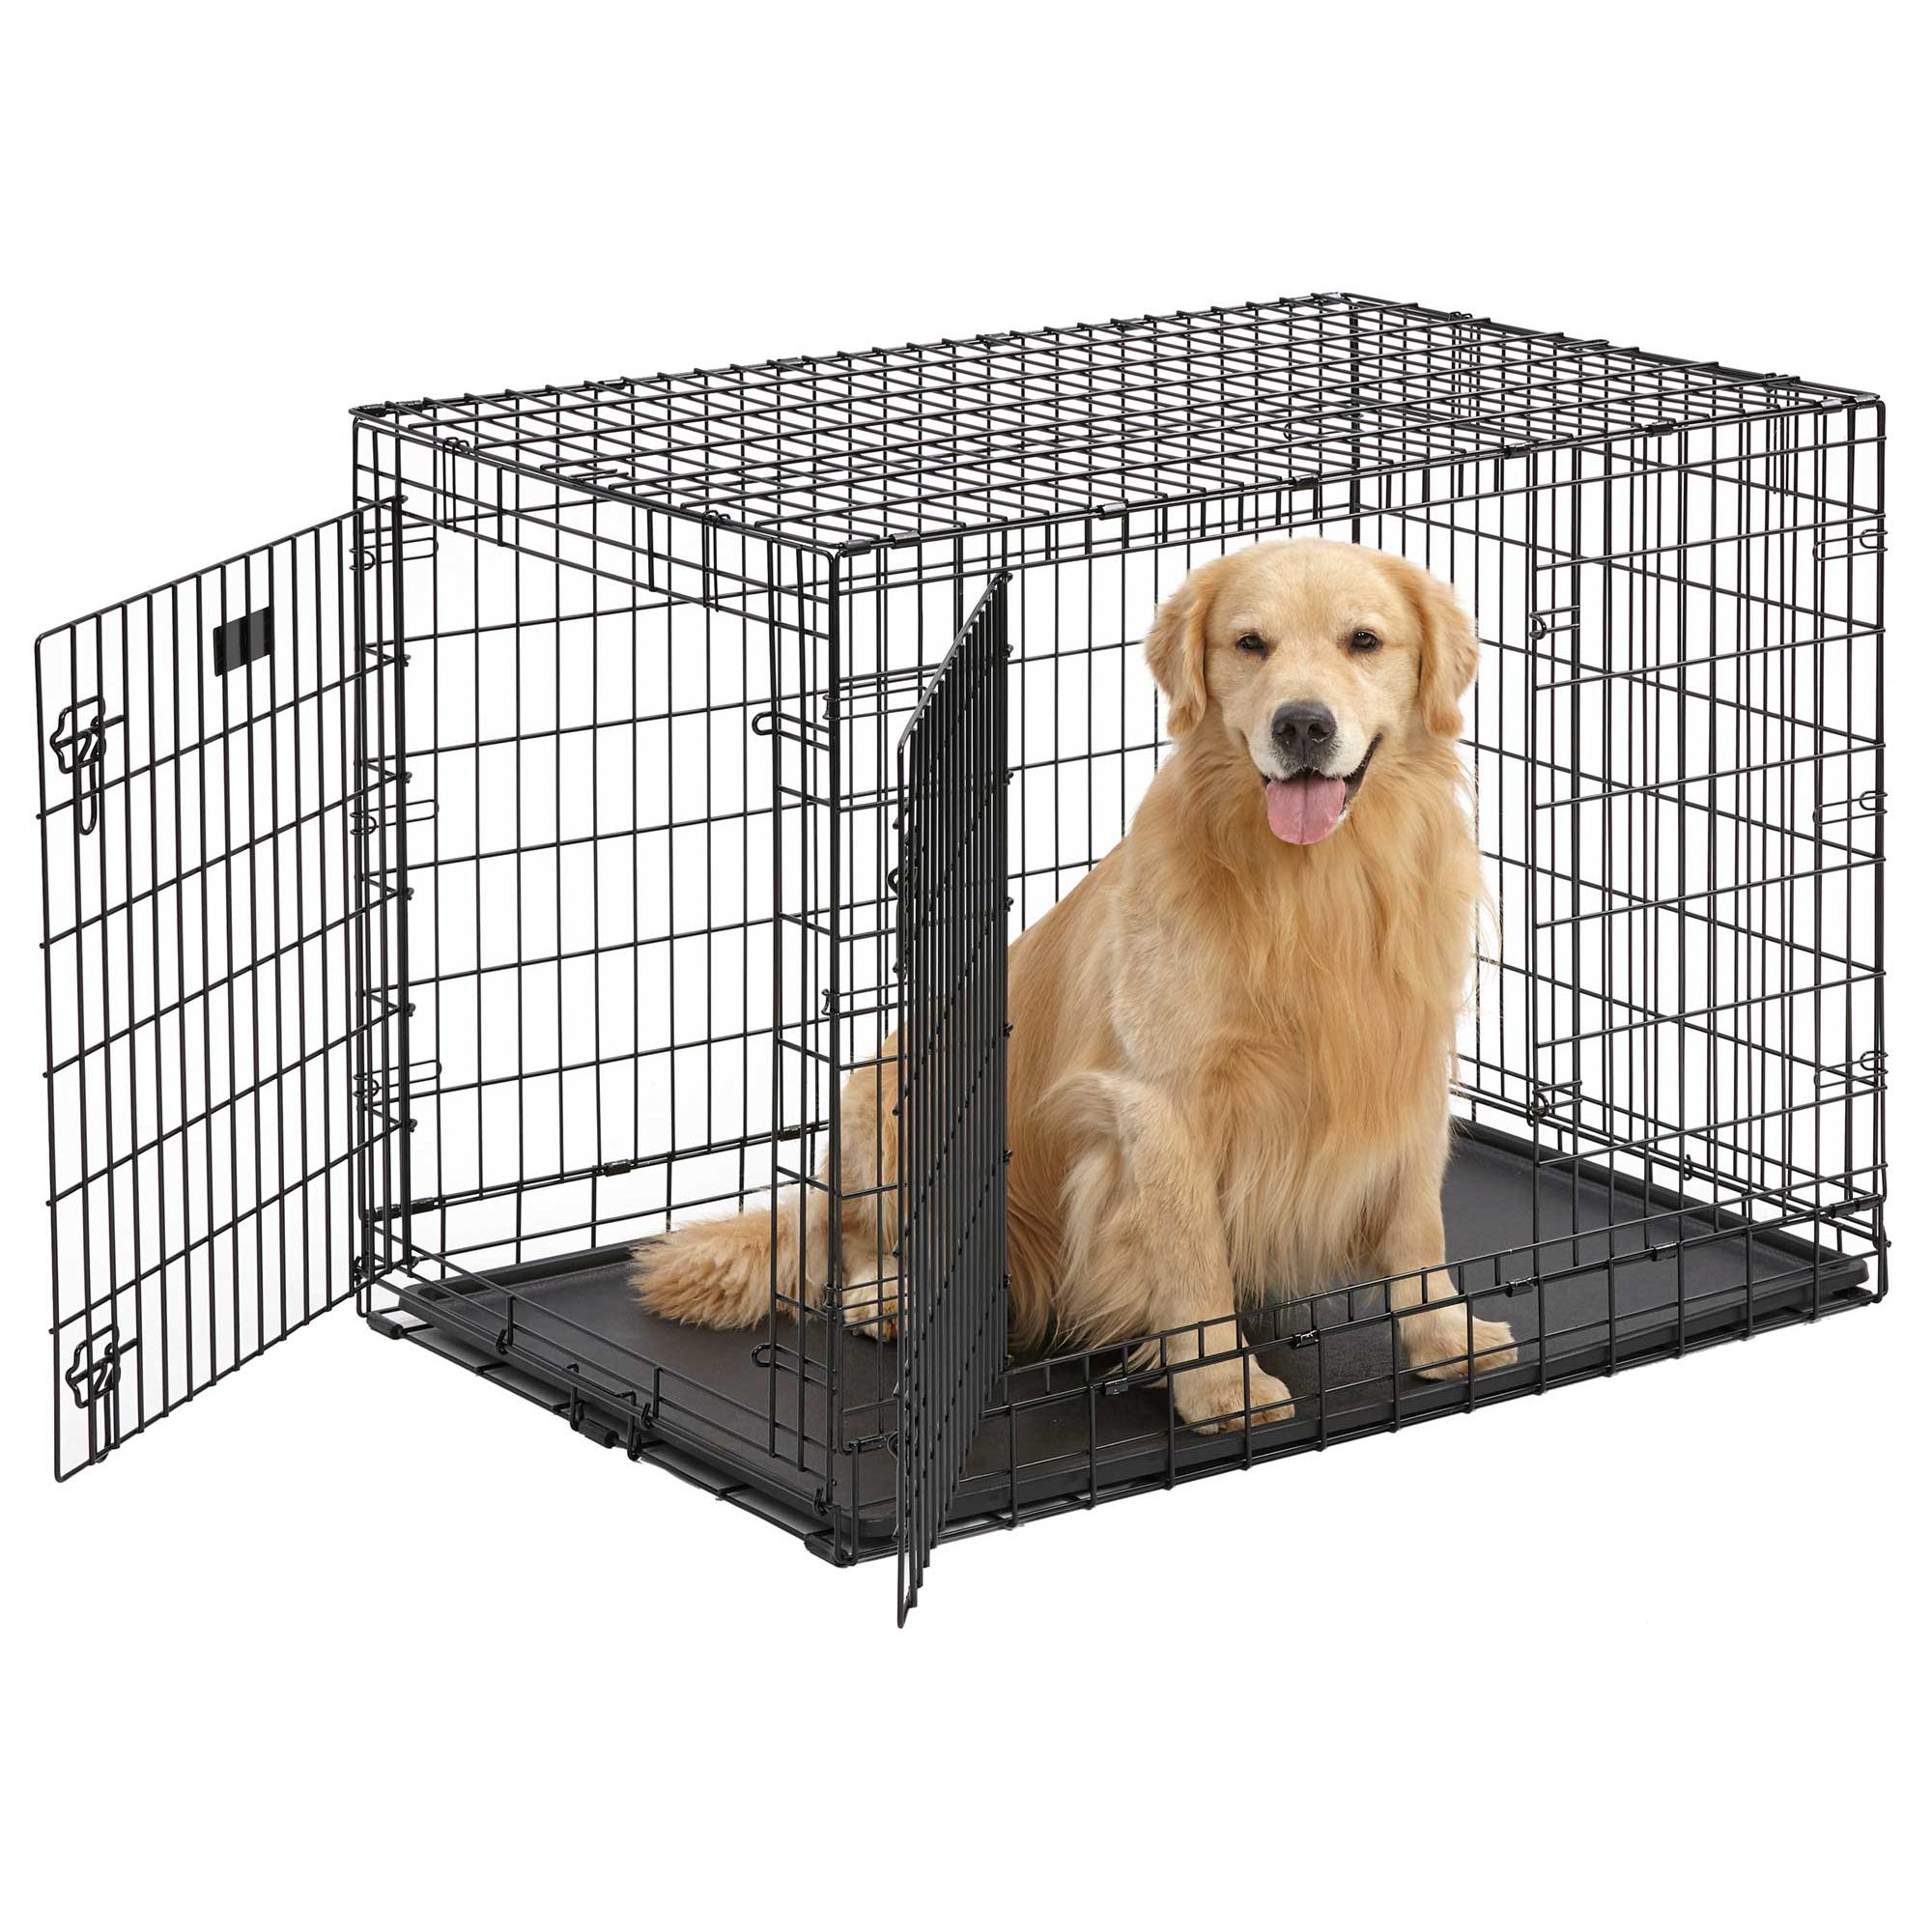 petsmart dog cages